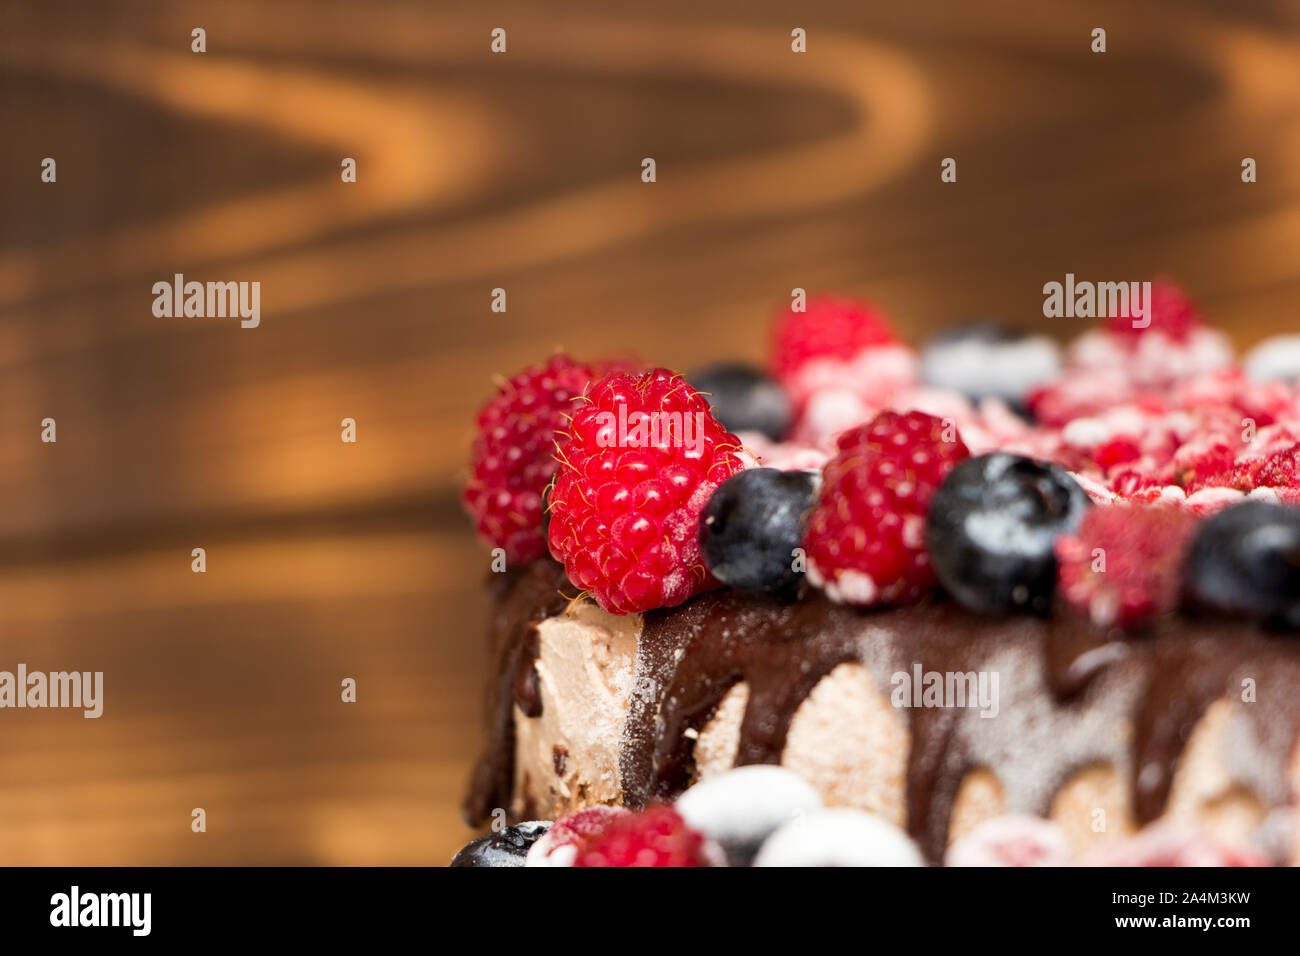 Une vue rapprochée de gâteau au chocolat végétalien couverts avec les framboises et les bleuets, congelés dans le réfrigérateur, sur une table avec arrière-plan flou. Copie Banque D'Images